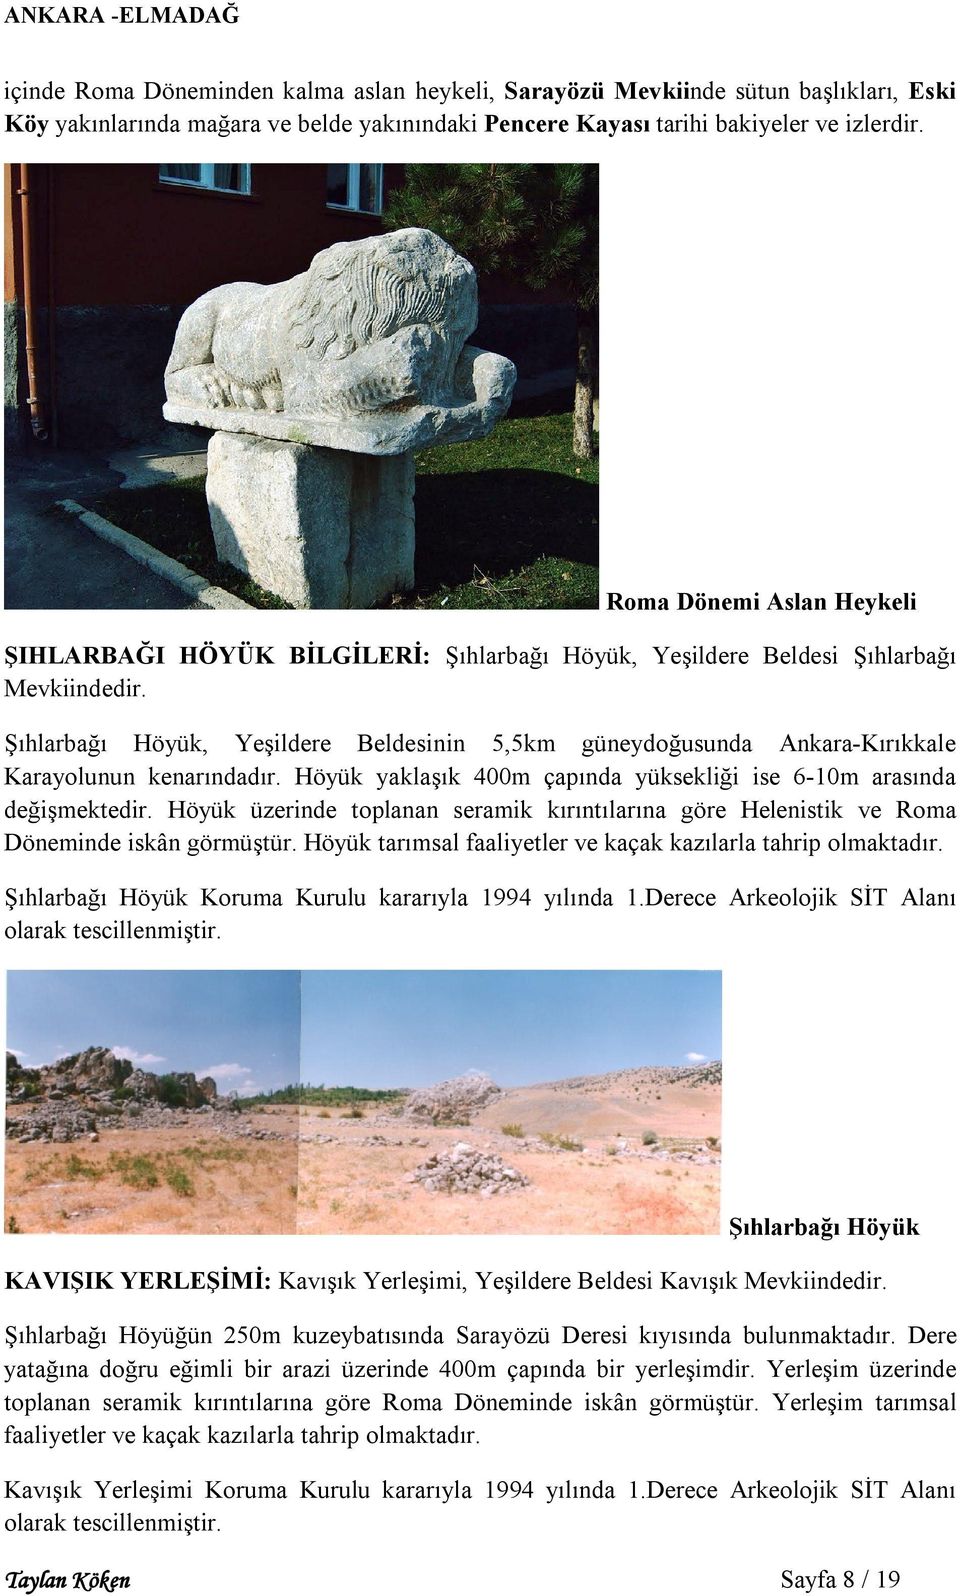 Şıhlarbağı Höyük, Yeşildere Beldesinin 5,5km güneydoğusunda Ankara-Kırıkkale Karayolunun kenarındadır. Höyük yaklaşık 400m çapında yüksekliği ise 6-10m arasında değişmektedir.